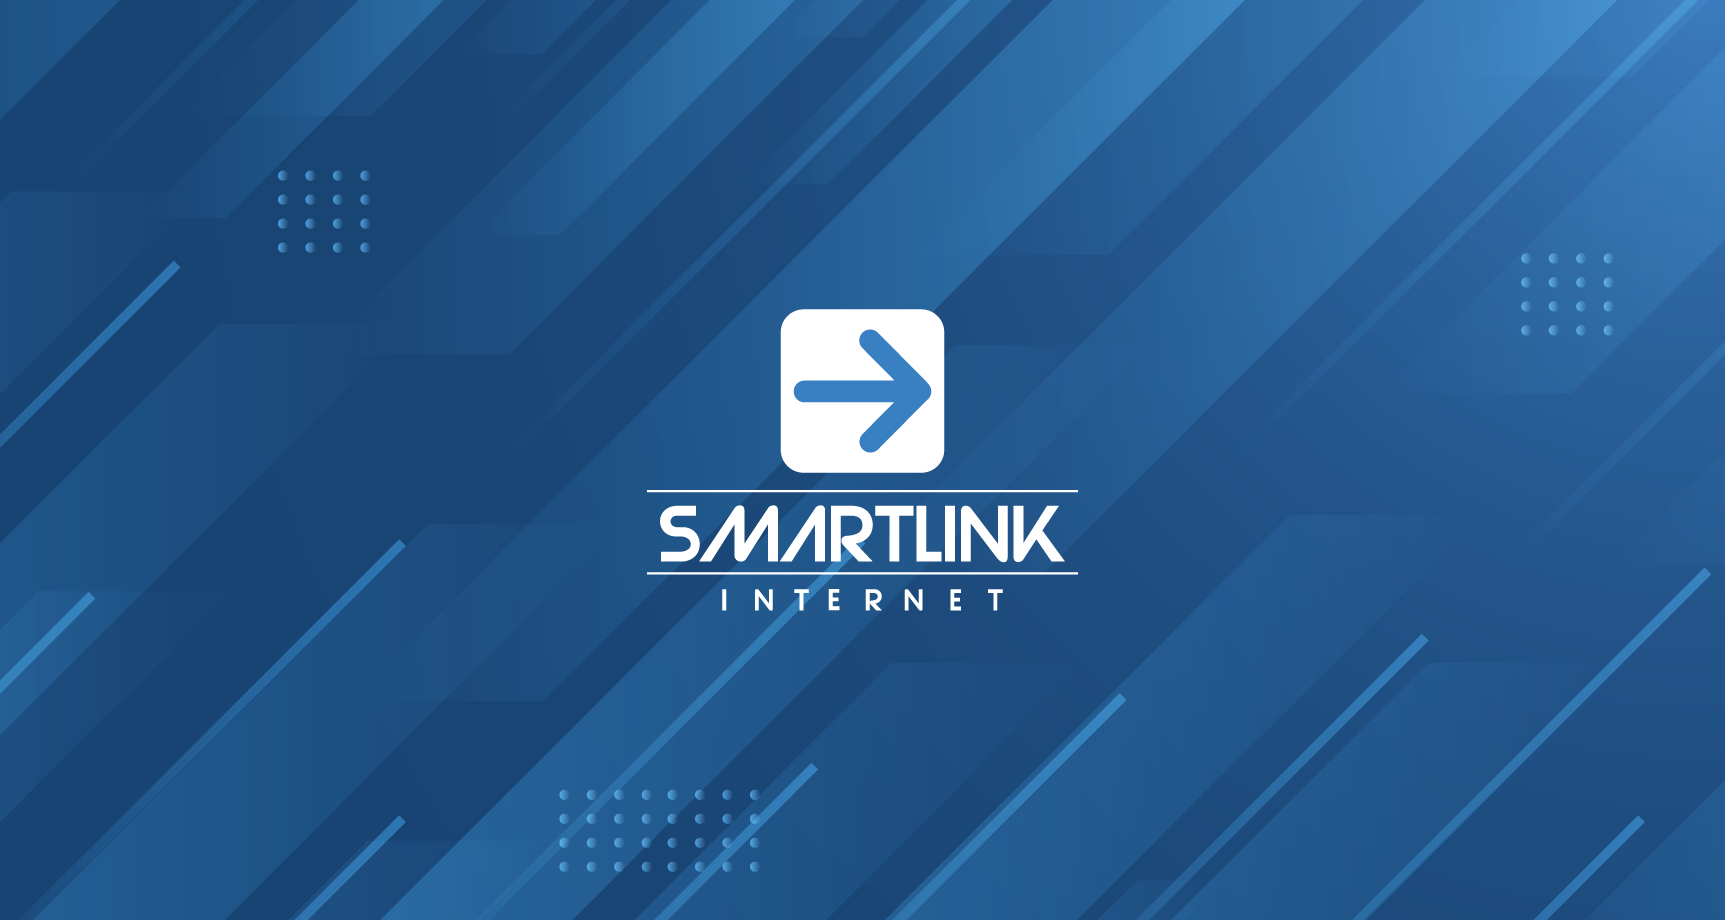 Tela de bem vindo Smartlink